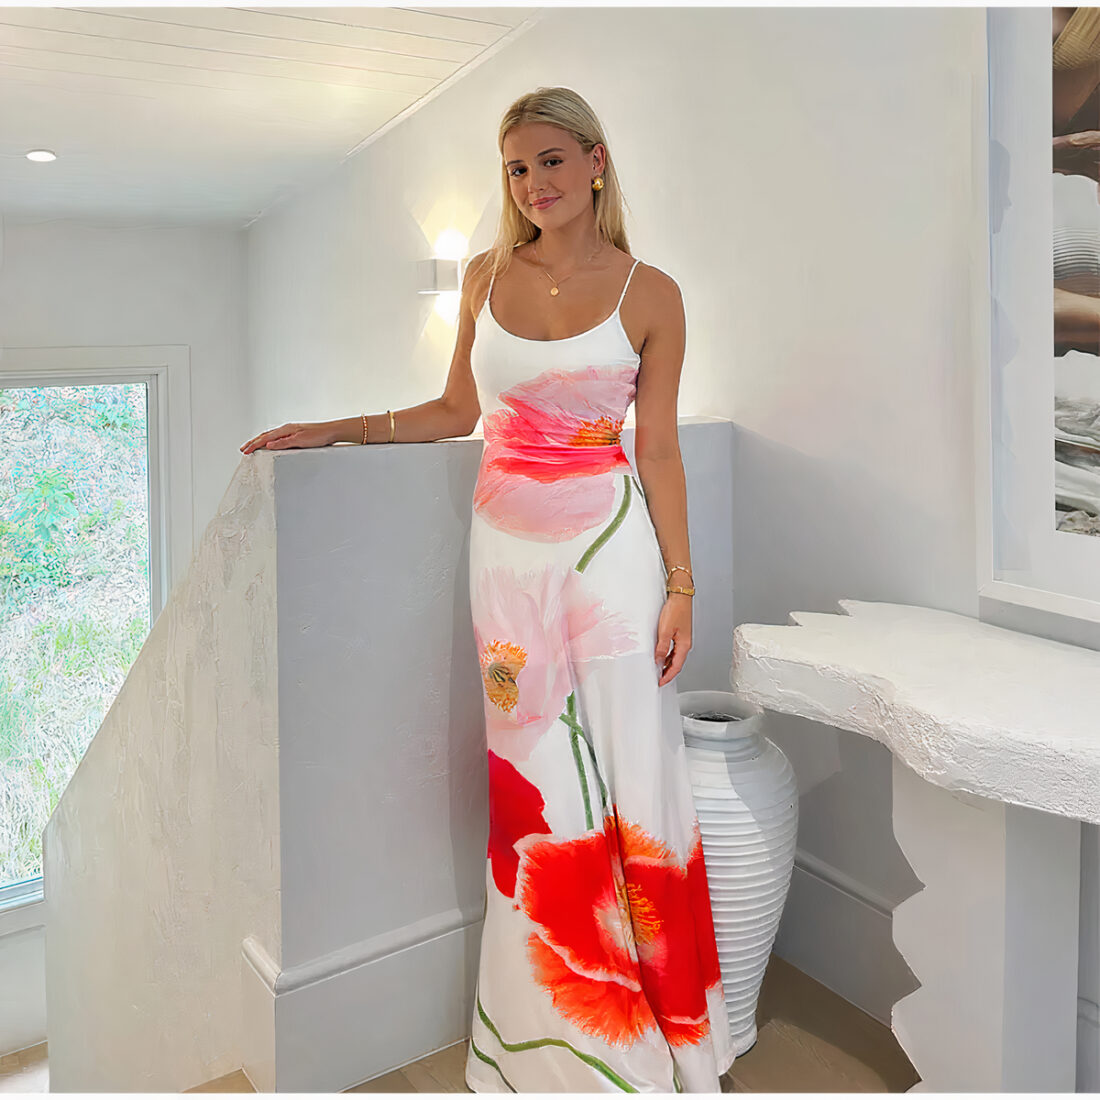 Femme blonde cheveux détachés, debout porte une robe longue à bretelle blanche avec des motifs de fleurs rouges et roses. Sa main droite est posé sur le muret de l'escalier qui descend à sa gauche. Un muret blanc est à sa gauche avec au-dessus un cadre. Une fenêtre au fond à gauche et l'éclairage derrière elle.